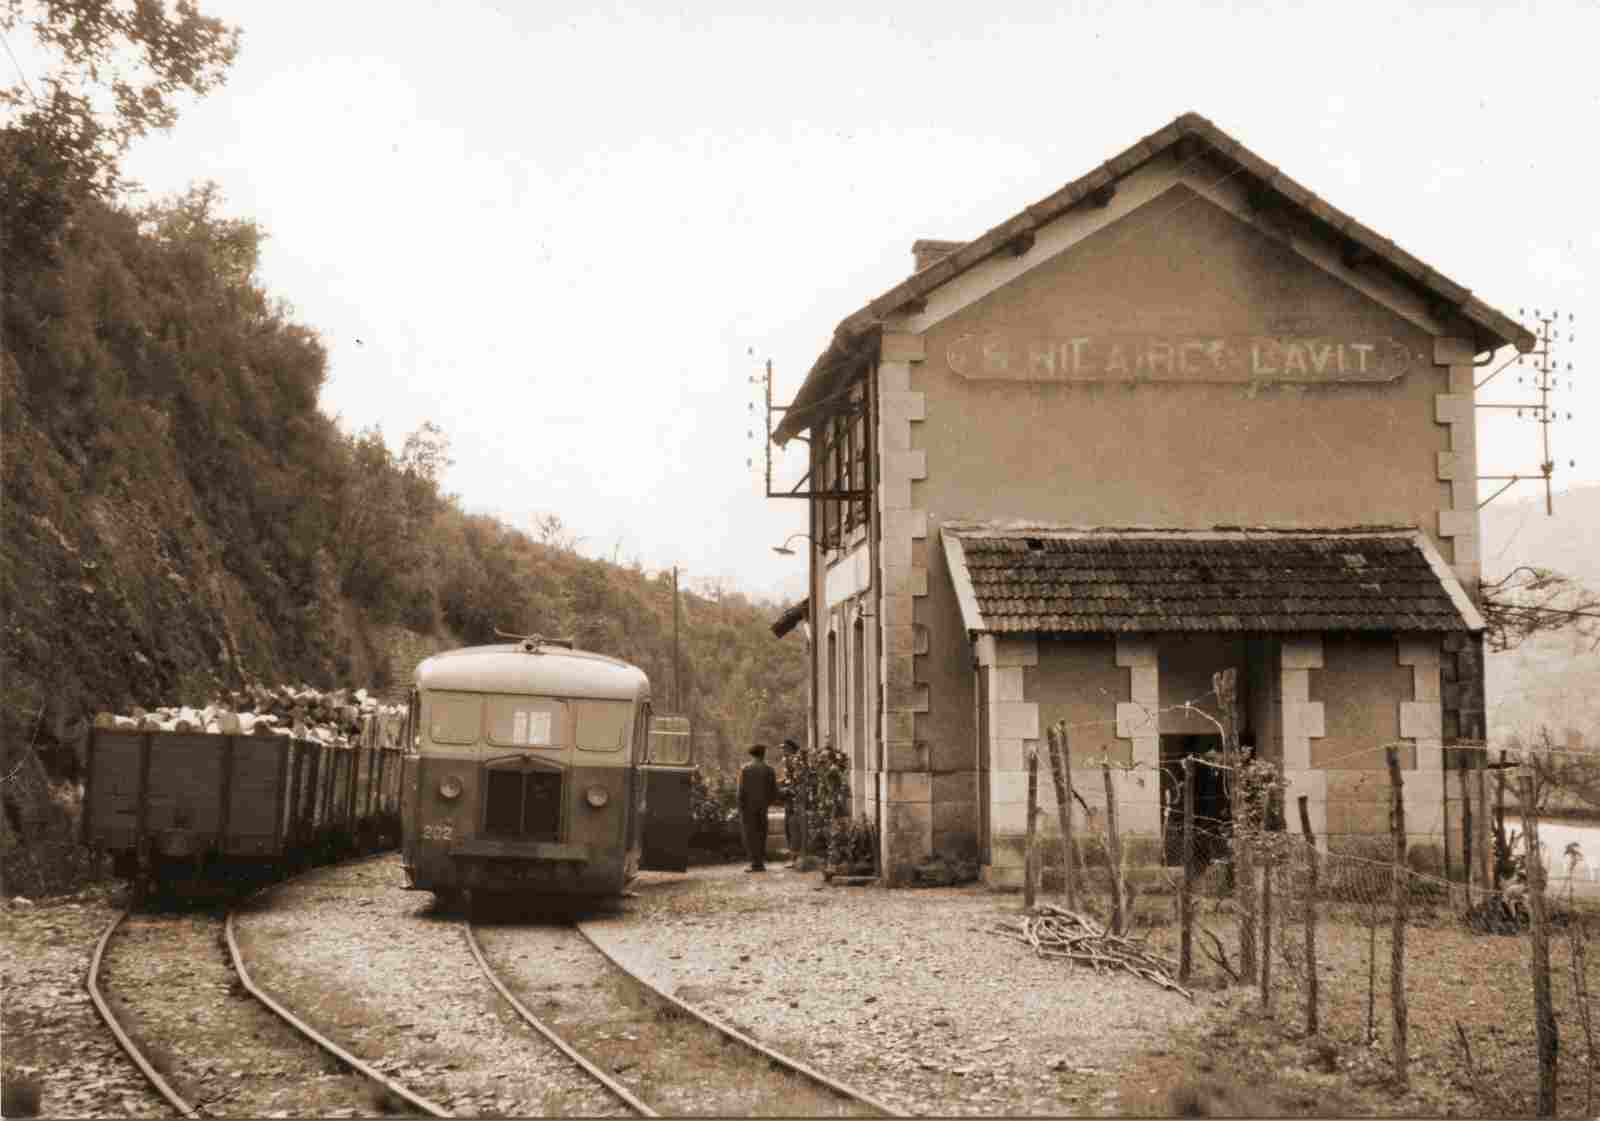 Gare de Saint-Hilaire-de-Lavit